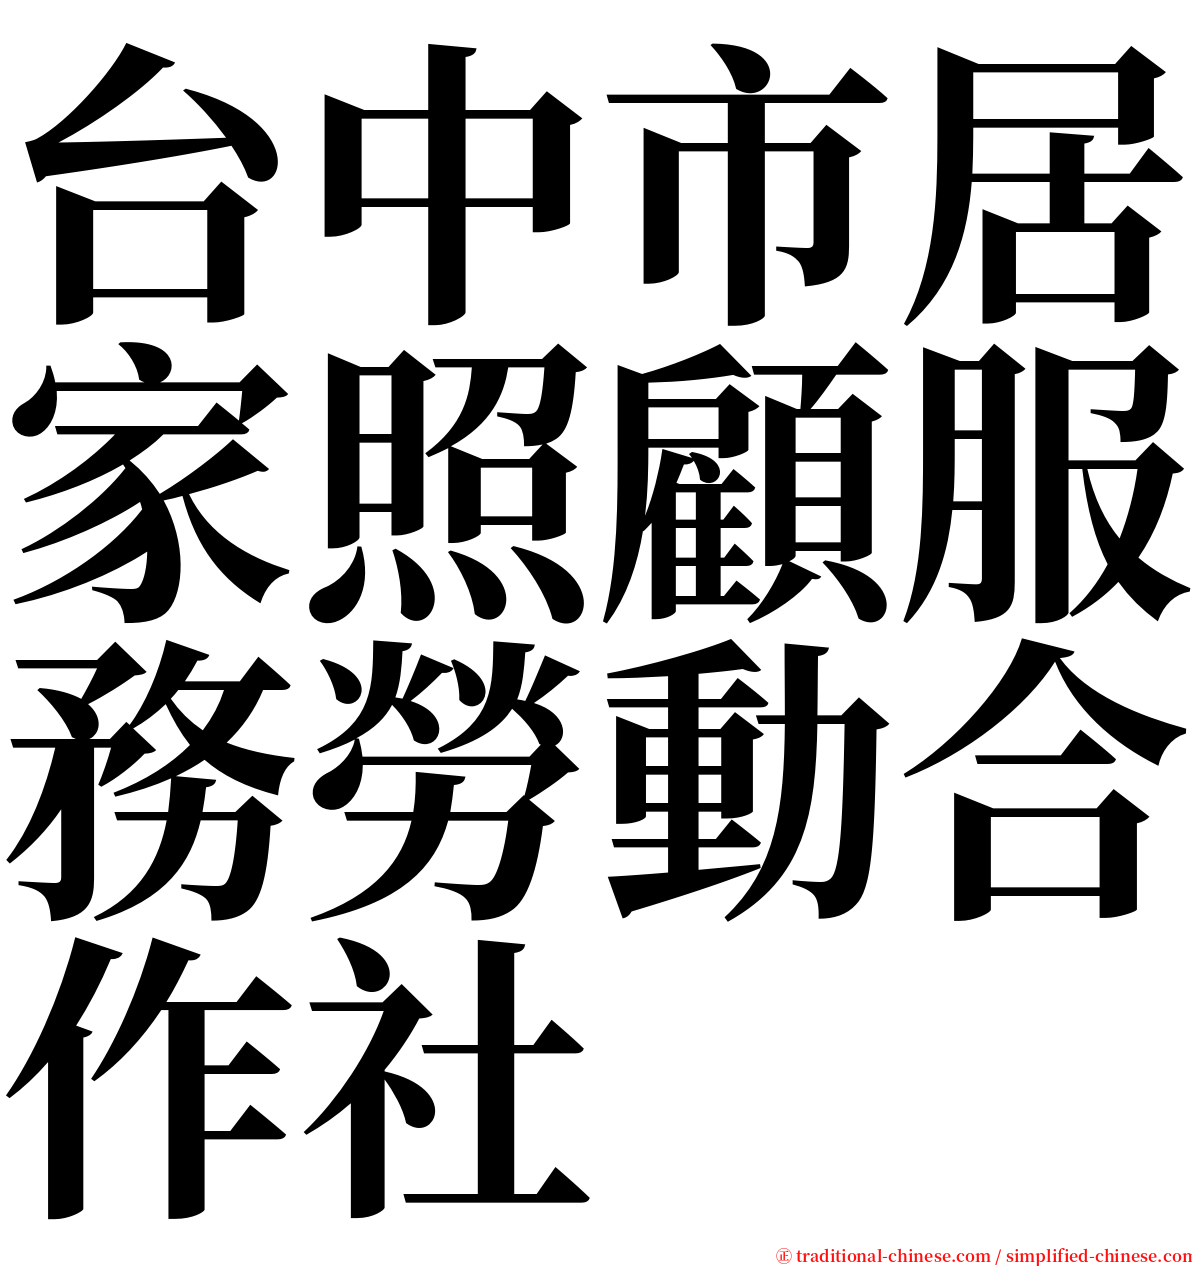 台中市居家照顧服務勞動合作社 serif font